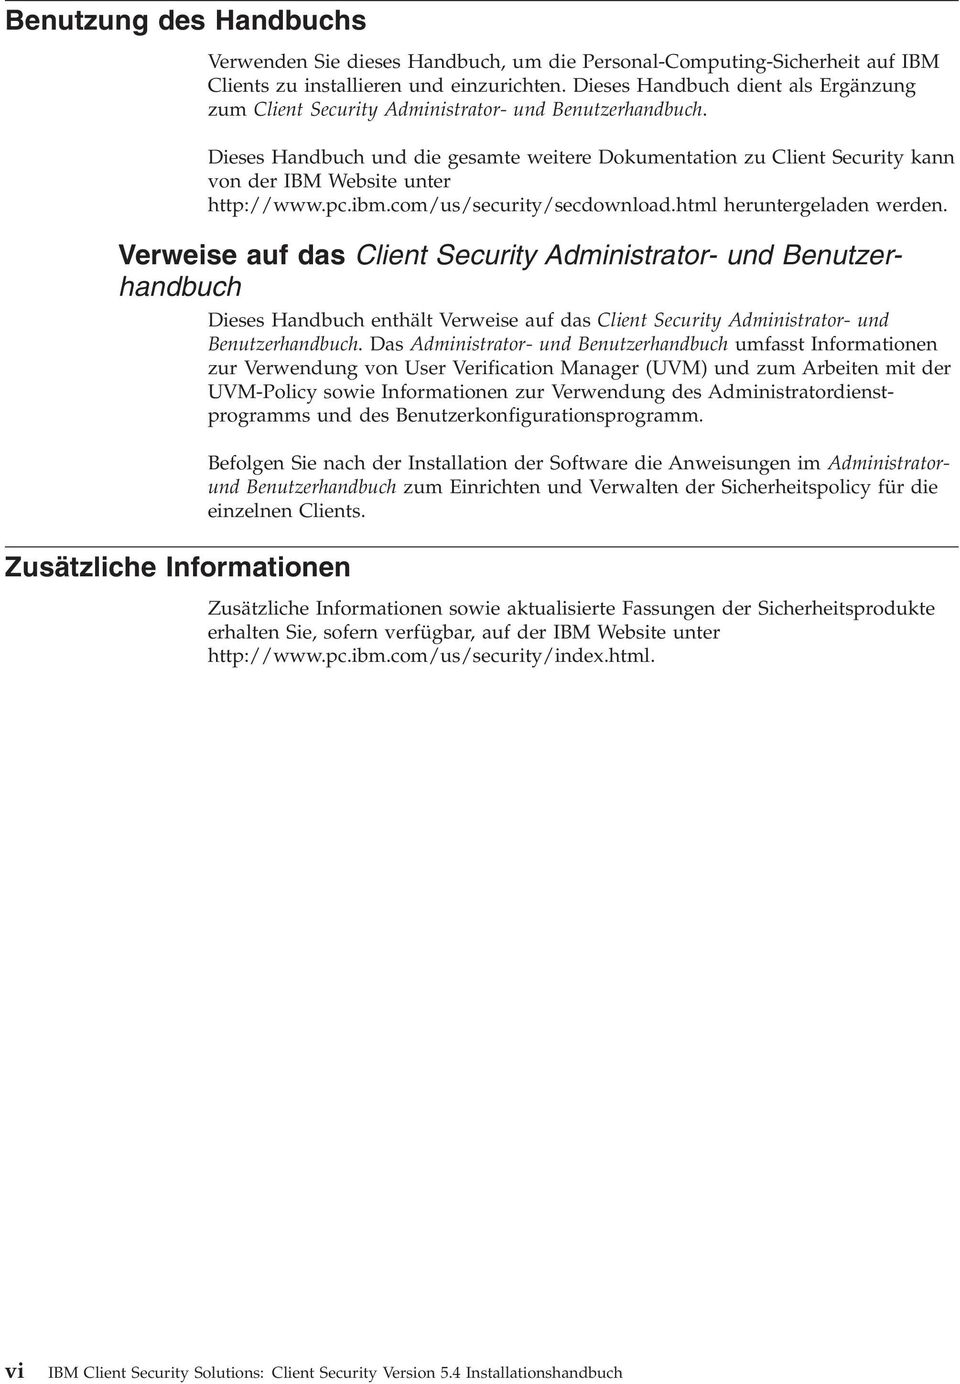 Dieses Handbuch und die gesamte weitere Dokumentation zu Client Security kann von der IBM Website unter http://www.pc.ibm.com/us/security/secdownload.html heruntergeladen werden.